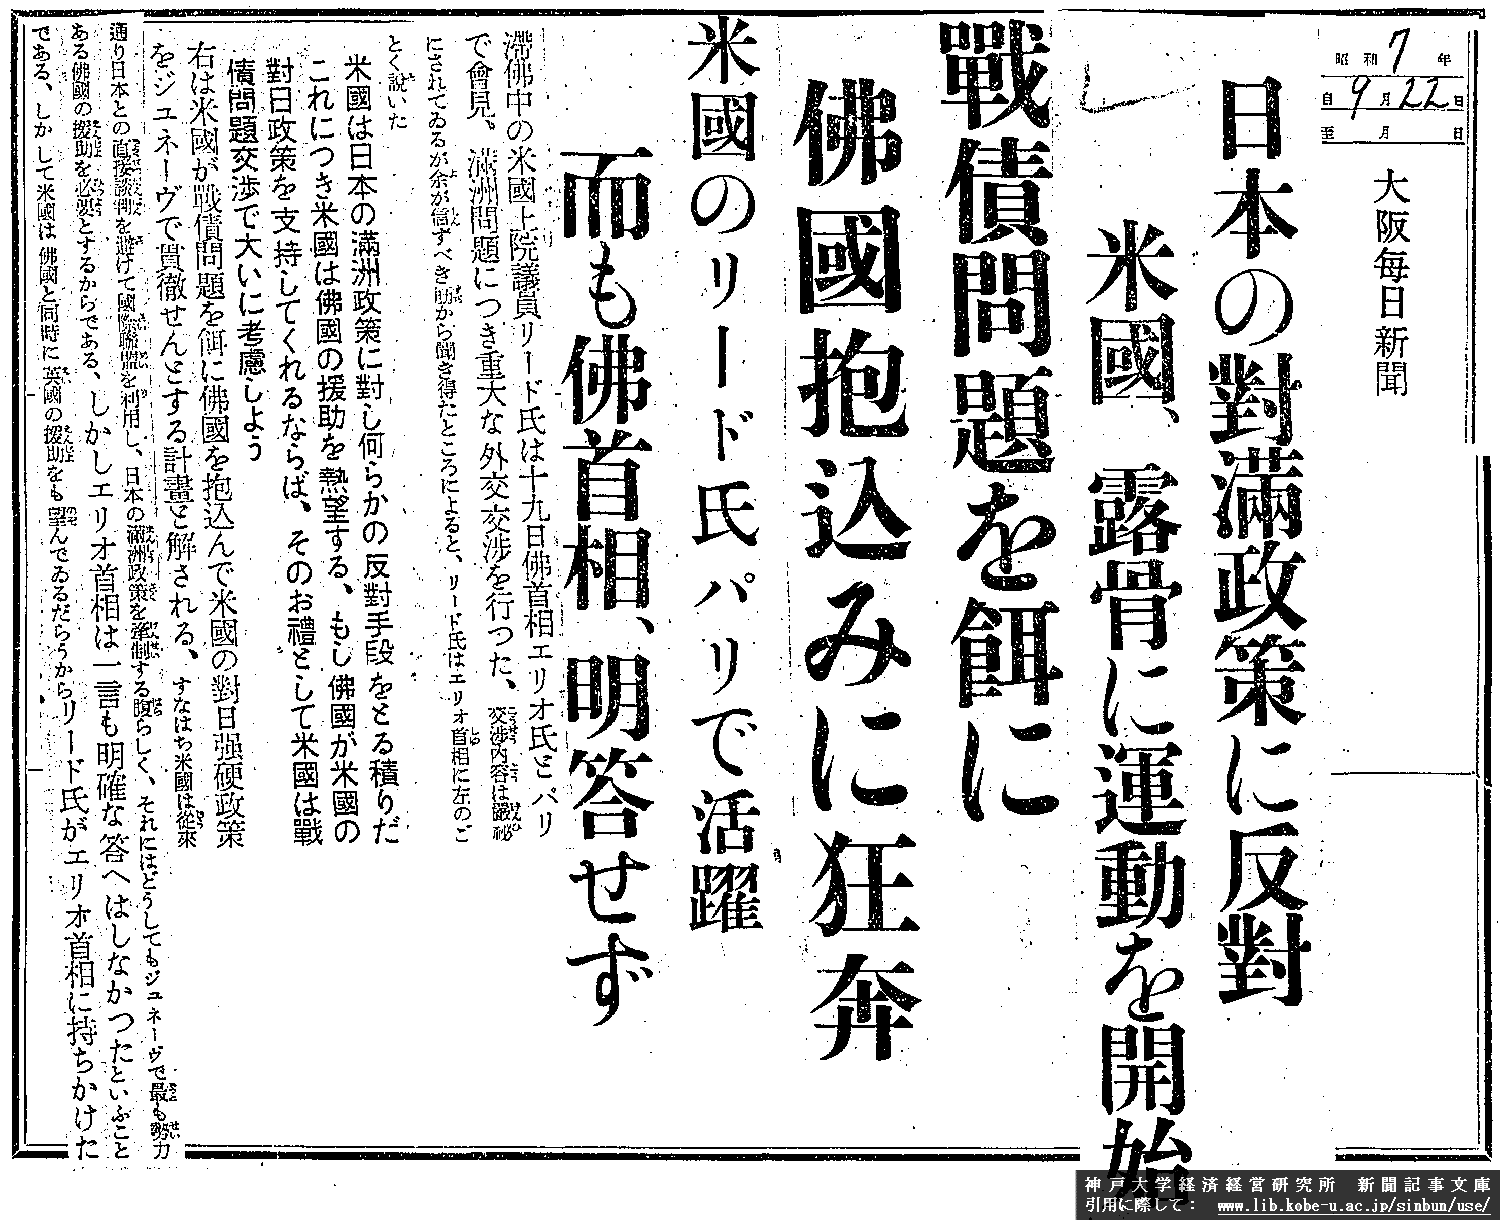 昭和７年９月２２日　大阪毎日新聞　日本の対満政策に反対 米国、露骨に運動を開始